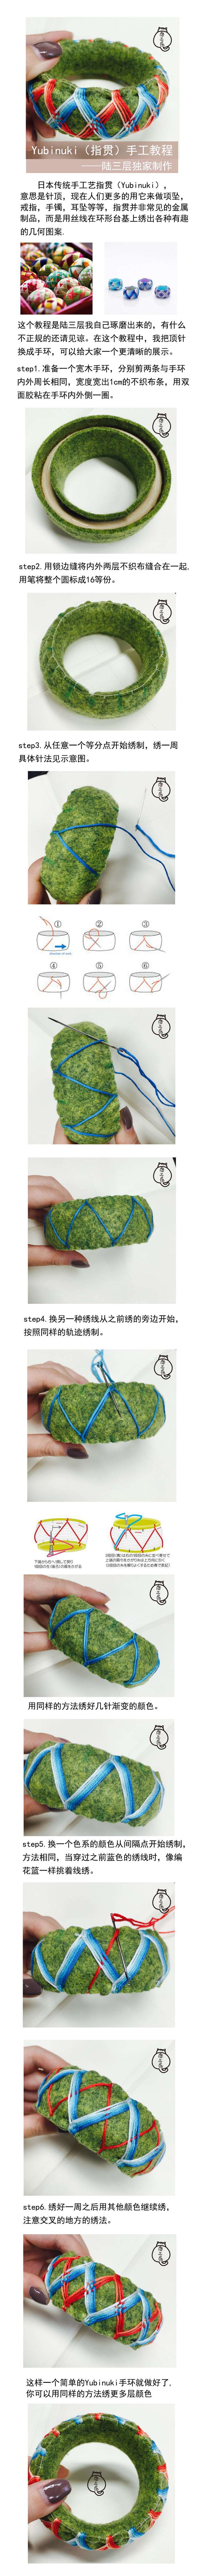 这种酷似手鞠球的日本传统手工艺“指贯”（Yubinuki），很多人想要教程，在网上没找到我就自己做了一个教程，用手环代替了指环，大家可以更清晰地看到制作方法，欢迎分享，关注微博“陆三层”